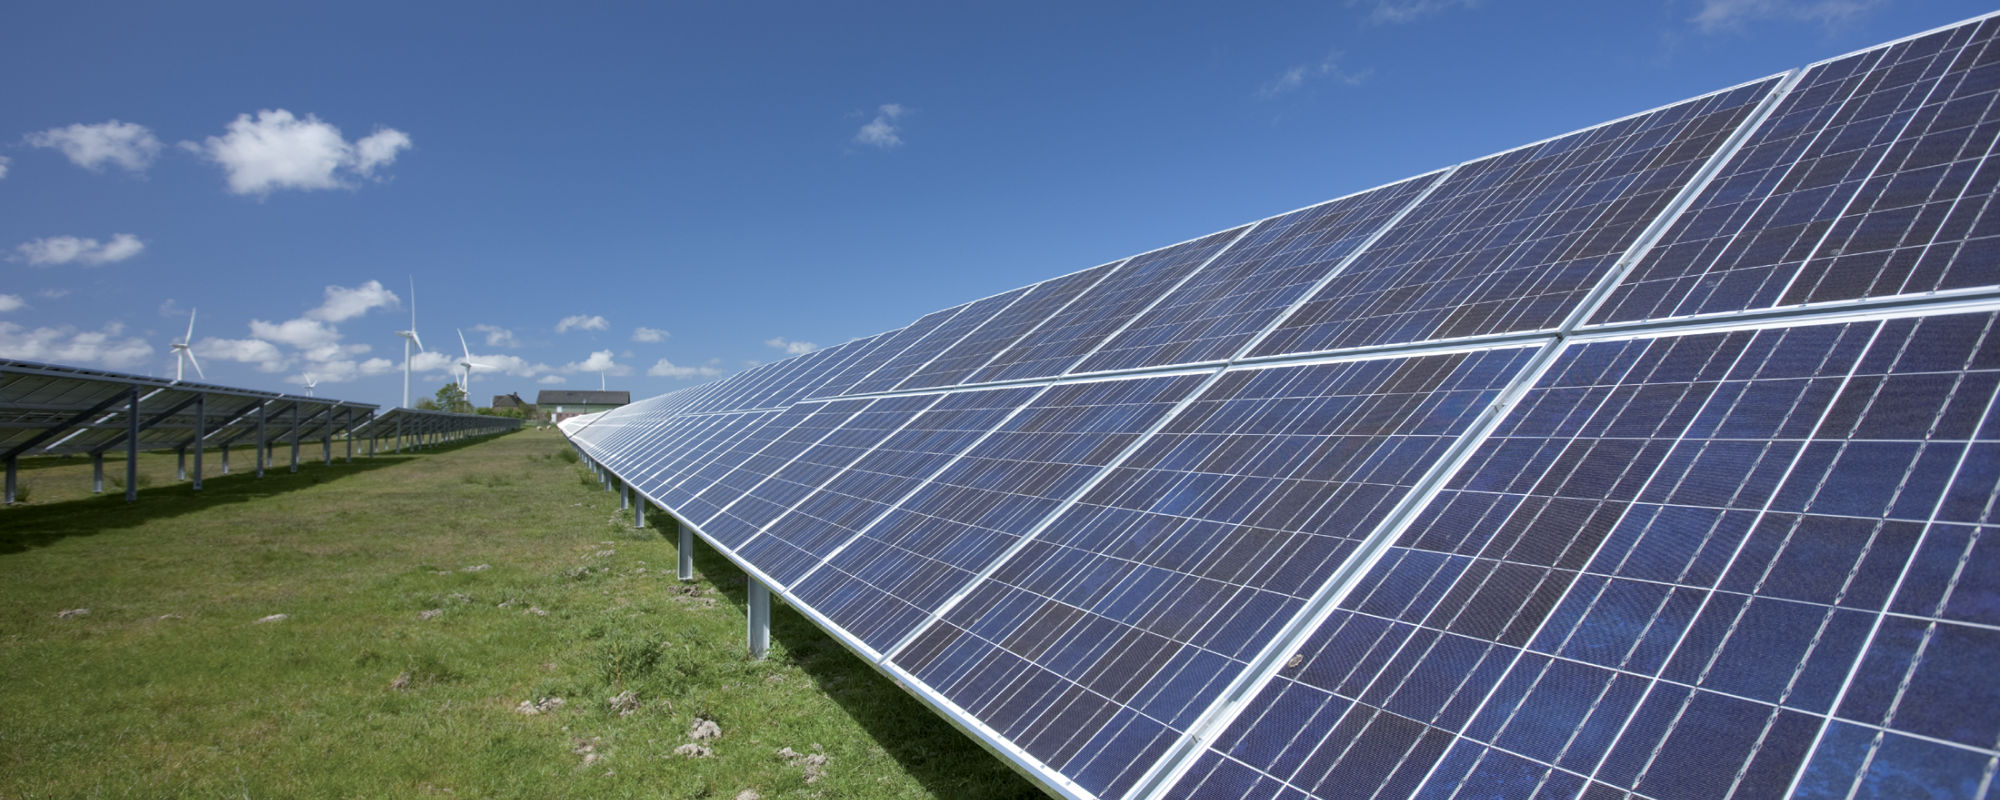 Finanzielle Beteiligungsmöglichkeiten bei Photovoltaik-Freiflächenanlagen